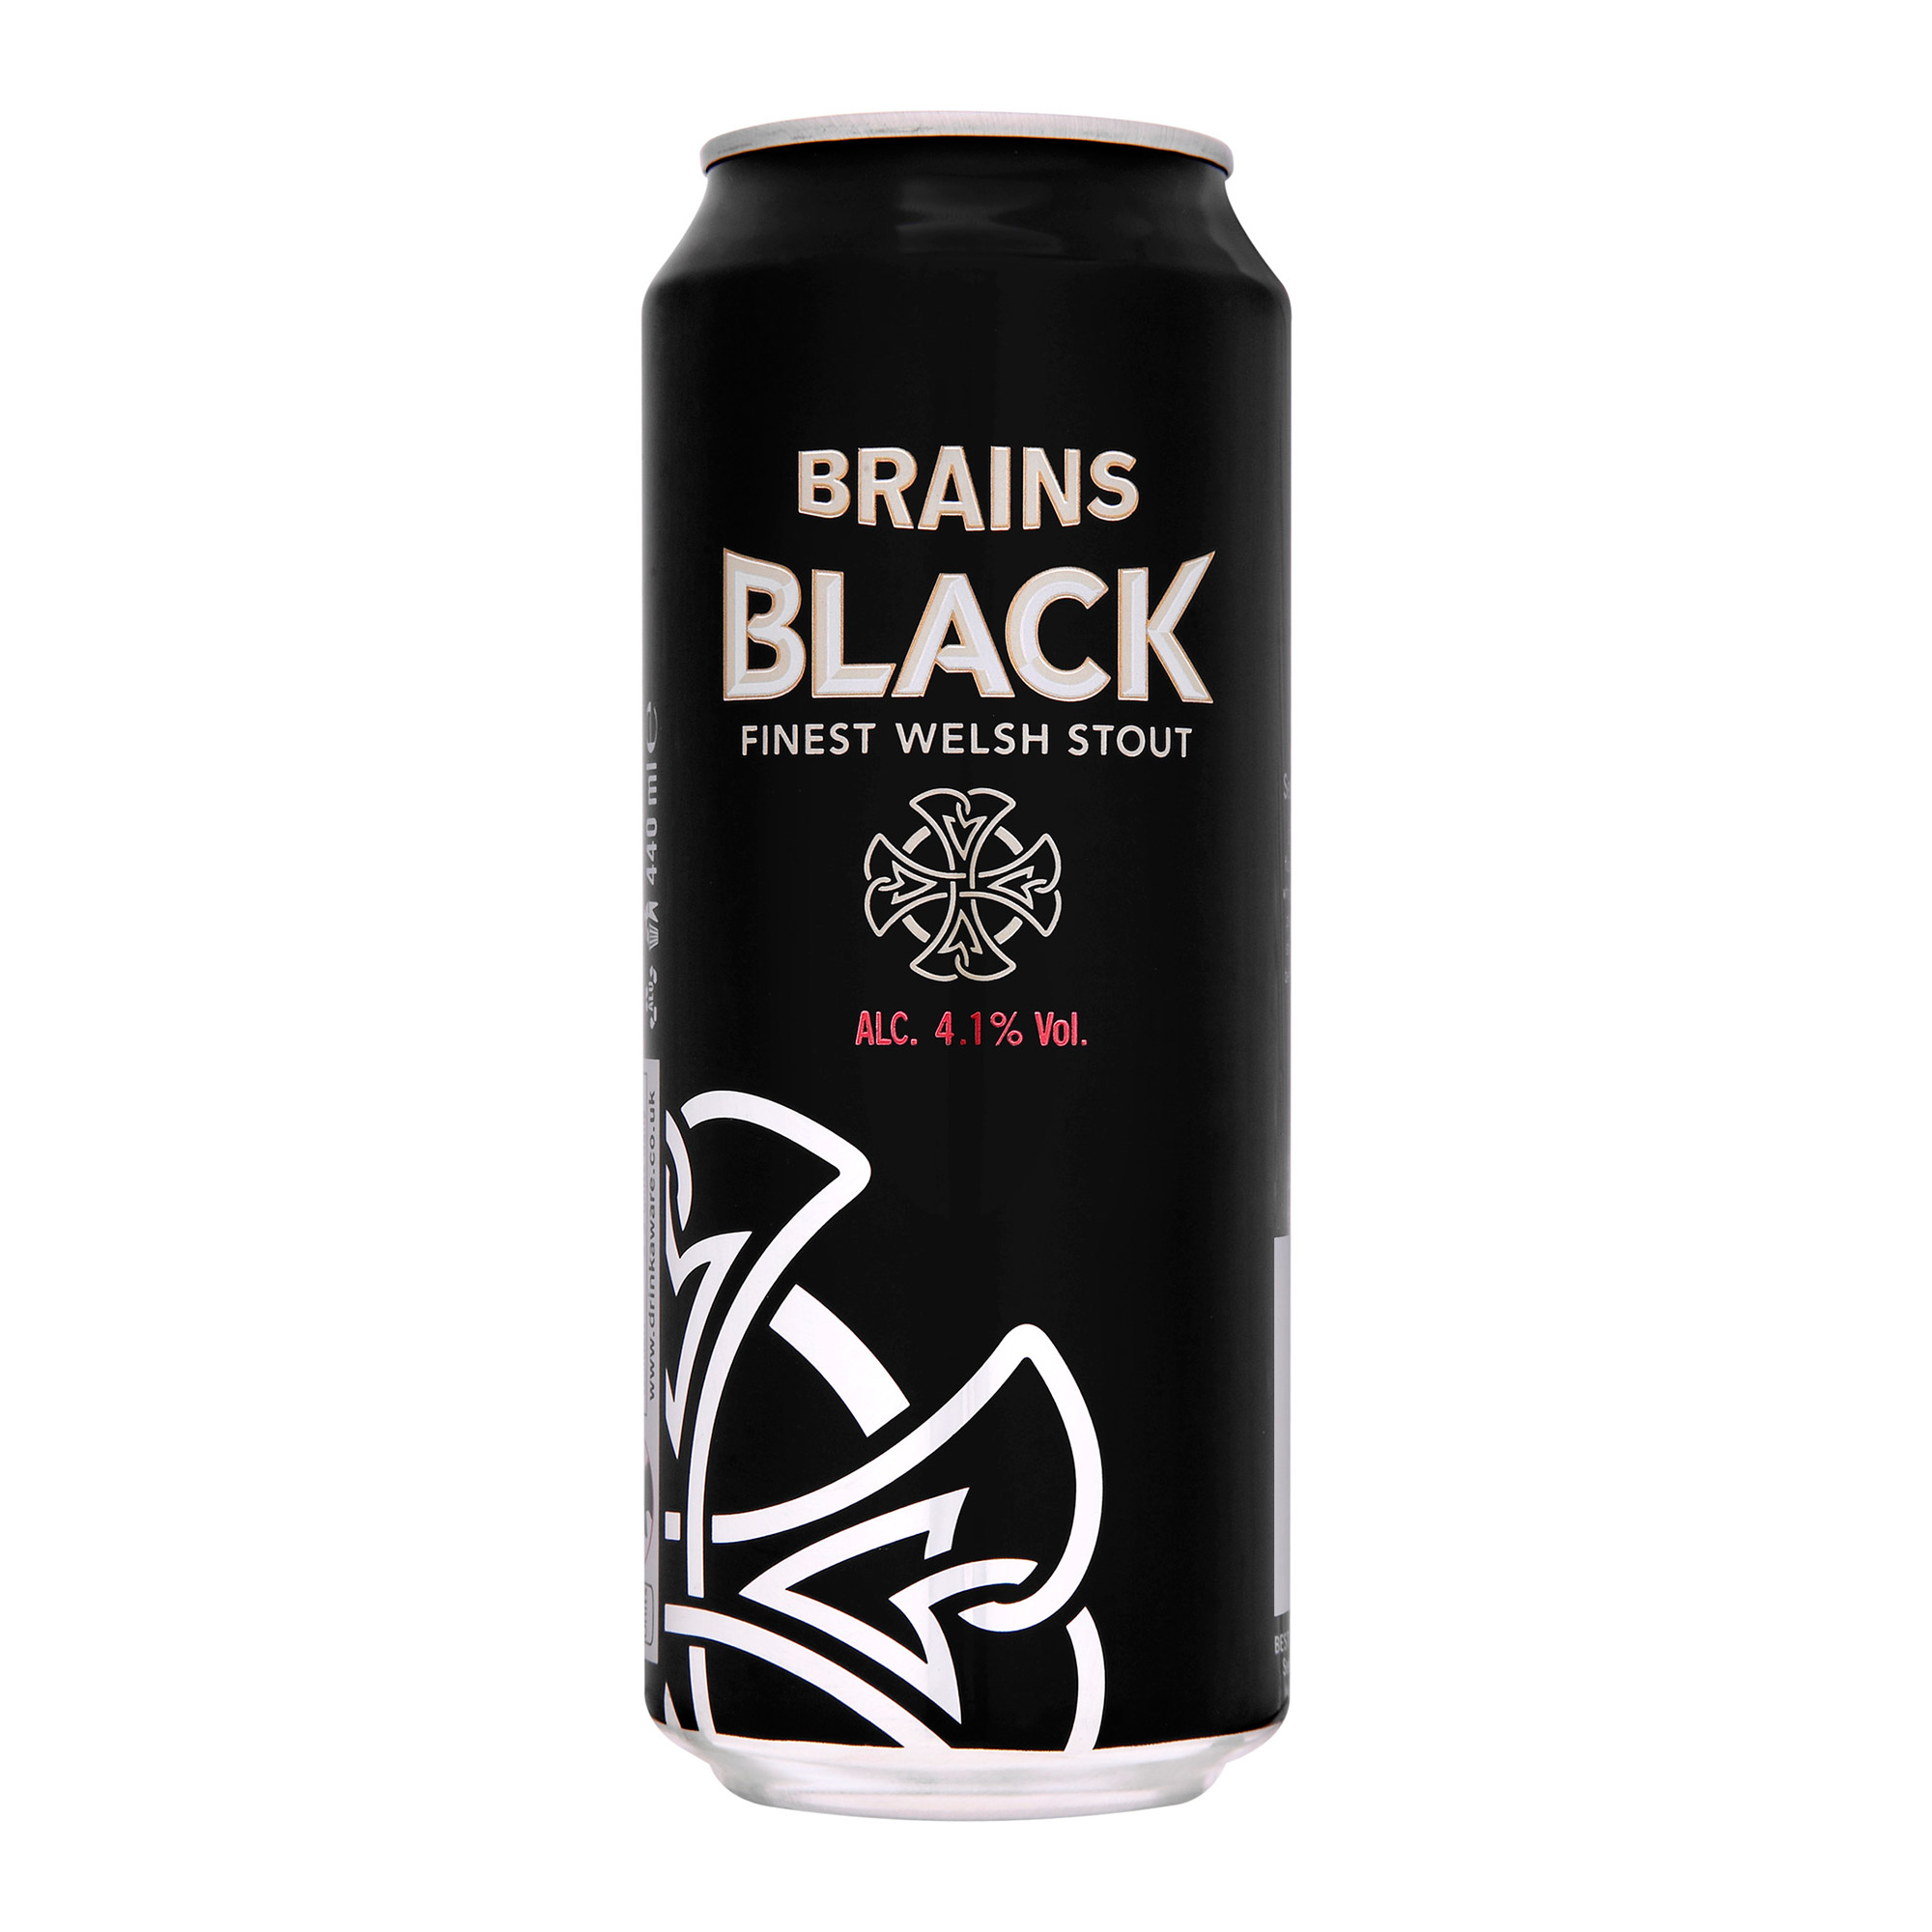 Black beer. Брэйнс Блэк Стаут. Black Brains пиво. Пиво черная банка. Пиво баночное Стаут.